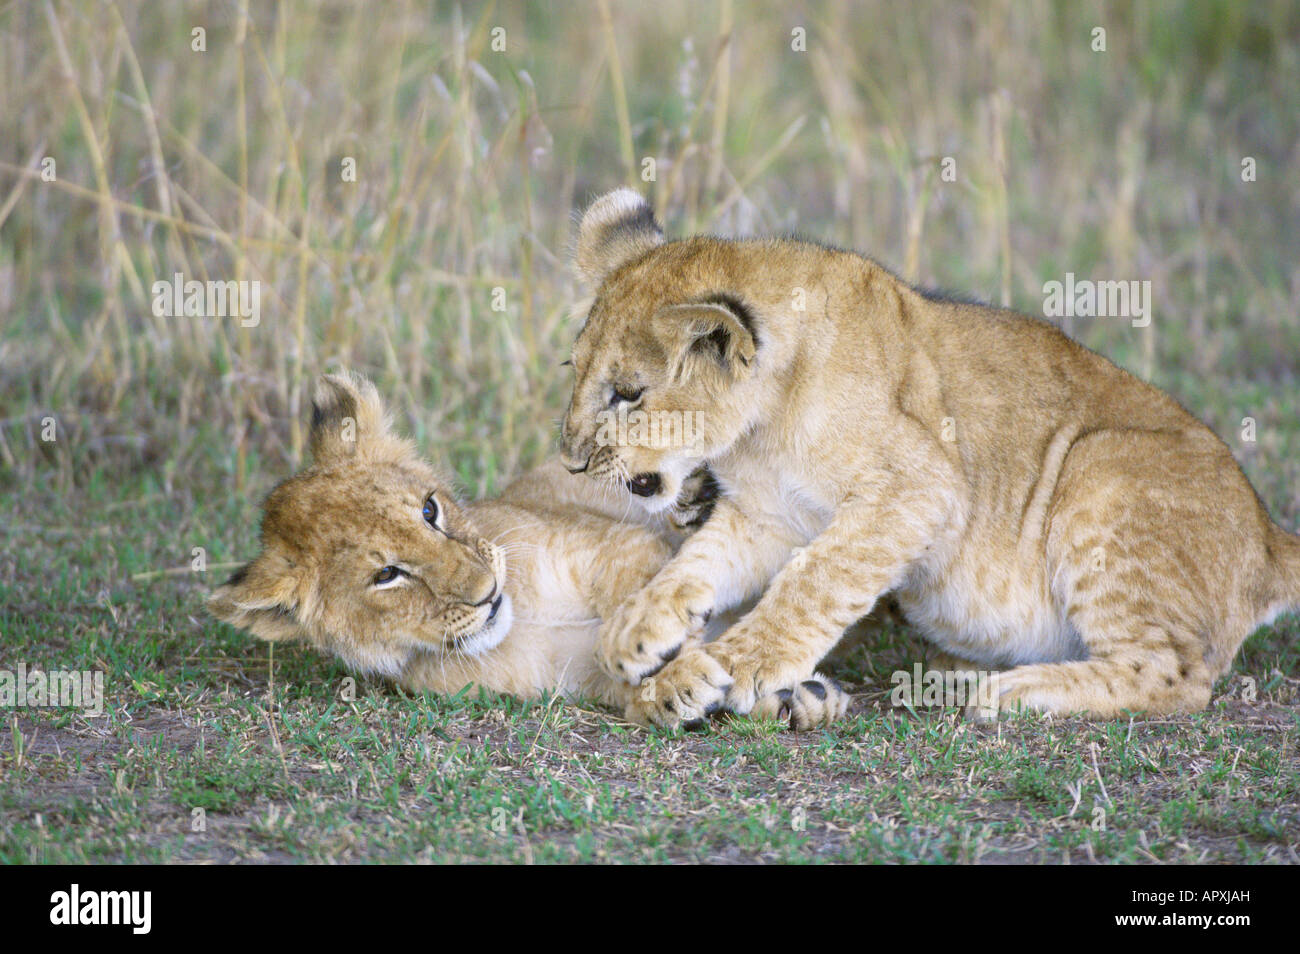 Deux oursons lion (Panthera leo) jouant Banque D'Images